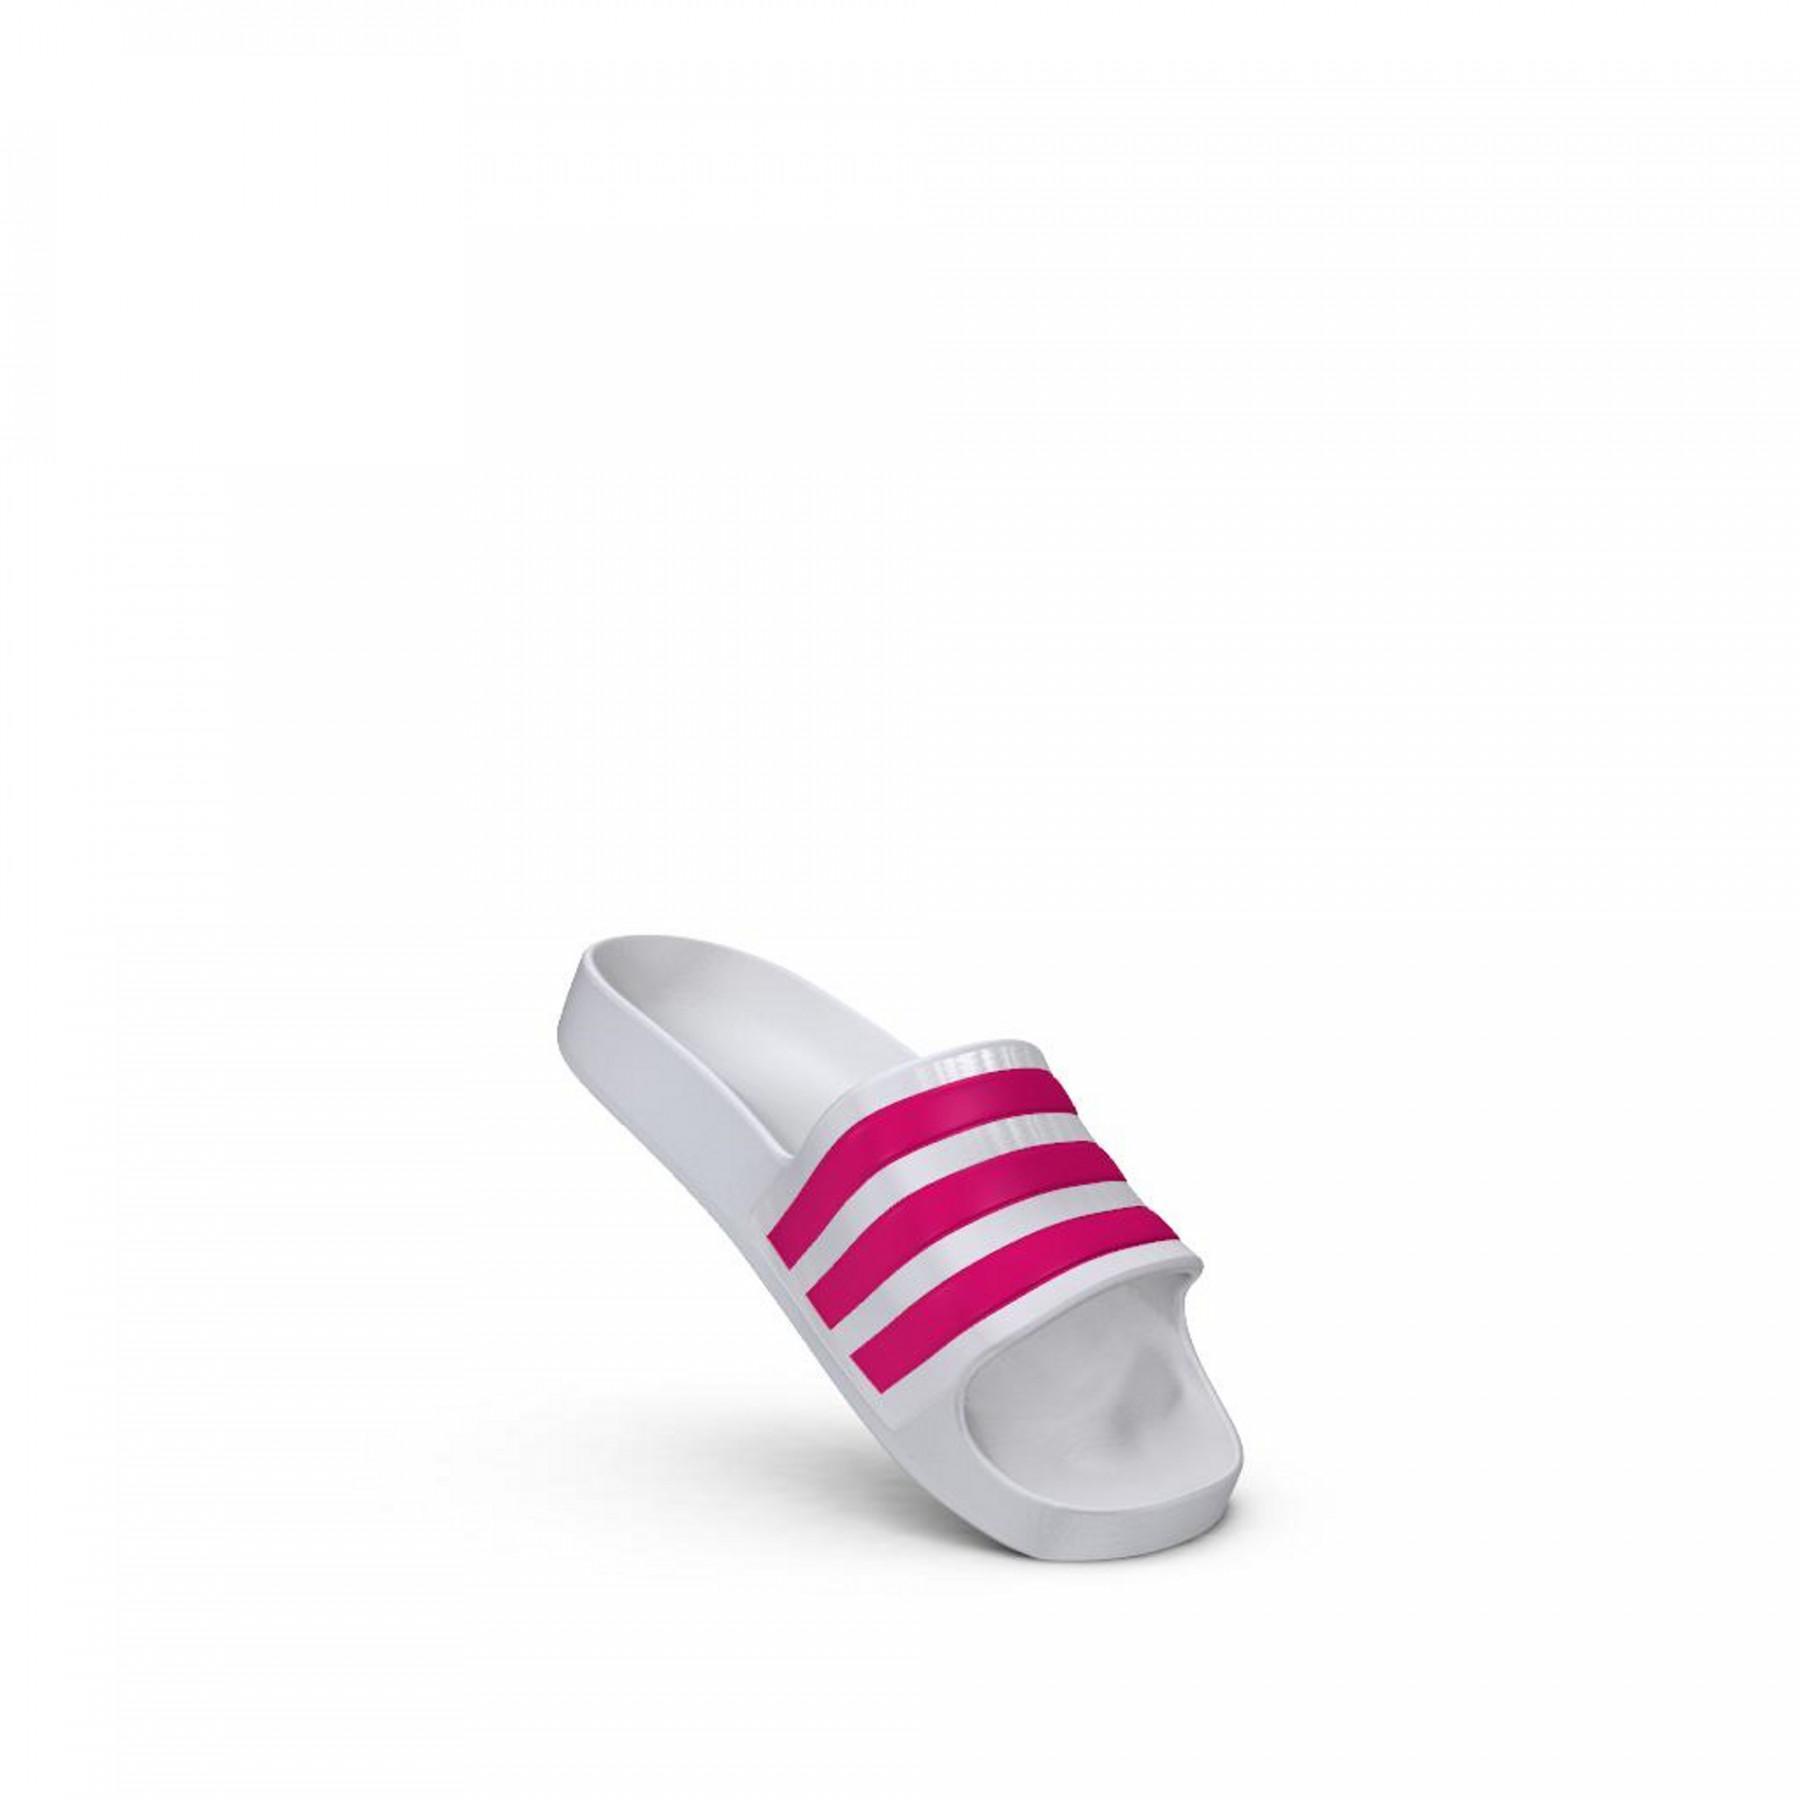 Children's flip-flop adidas Adilette Aqua